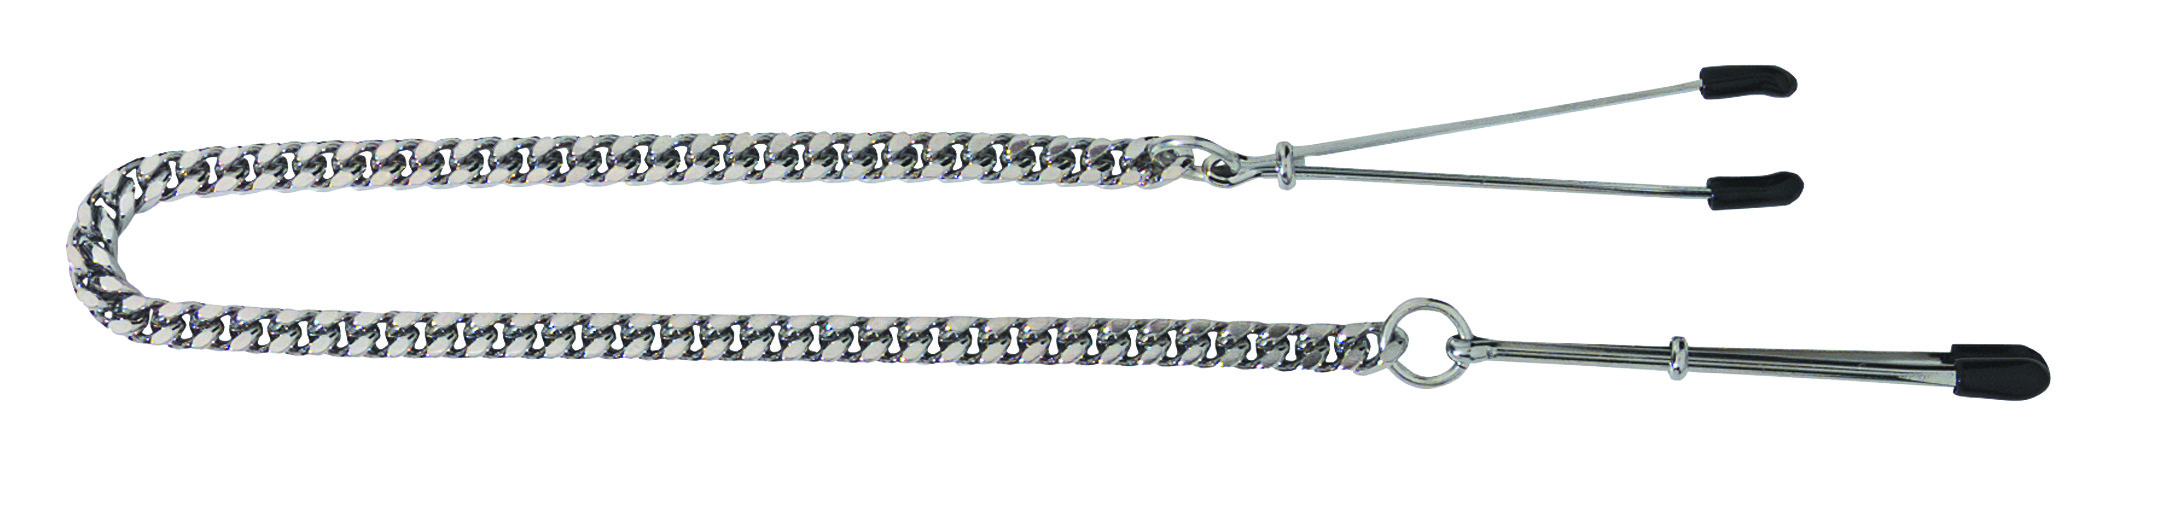 Adjustable Tweezer Clamps - Jewel Chain